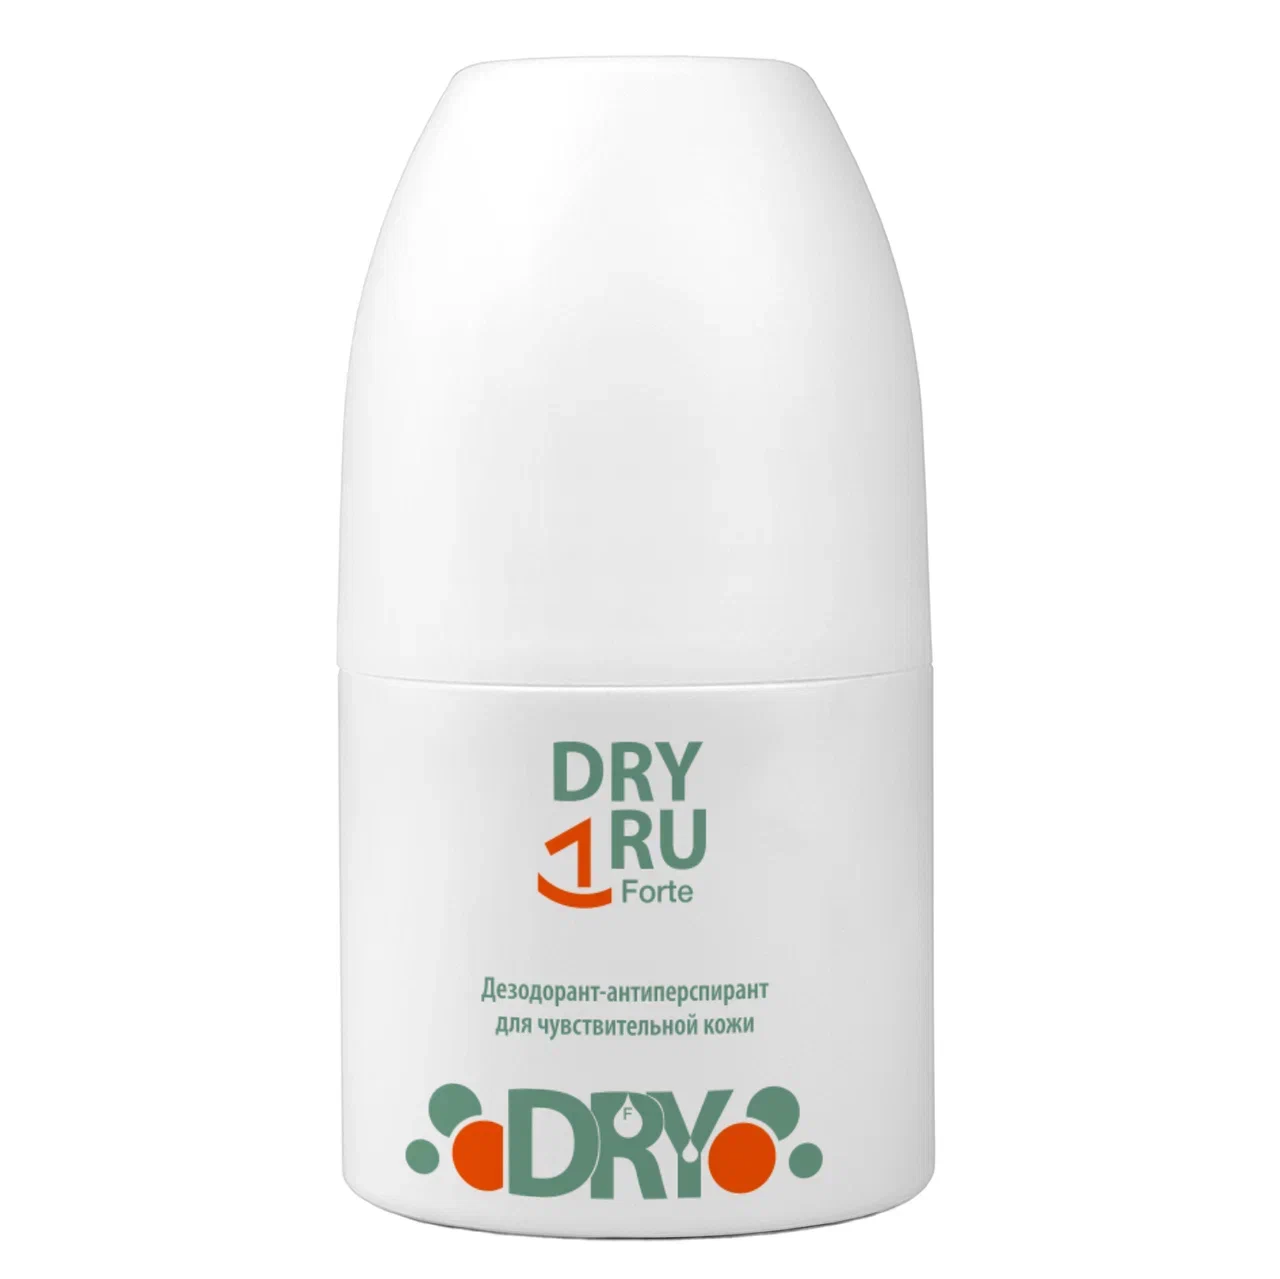 Дезодоран-антиперспирантт DRY RU Forte мужской, шариковый, от пота и запаха 50 мл